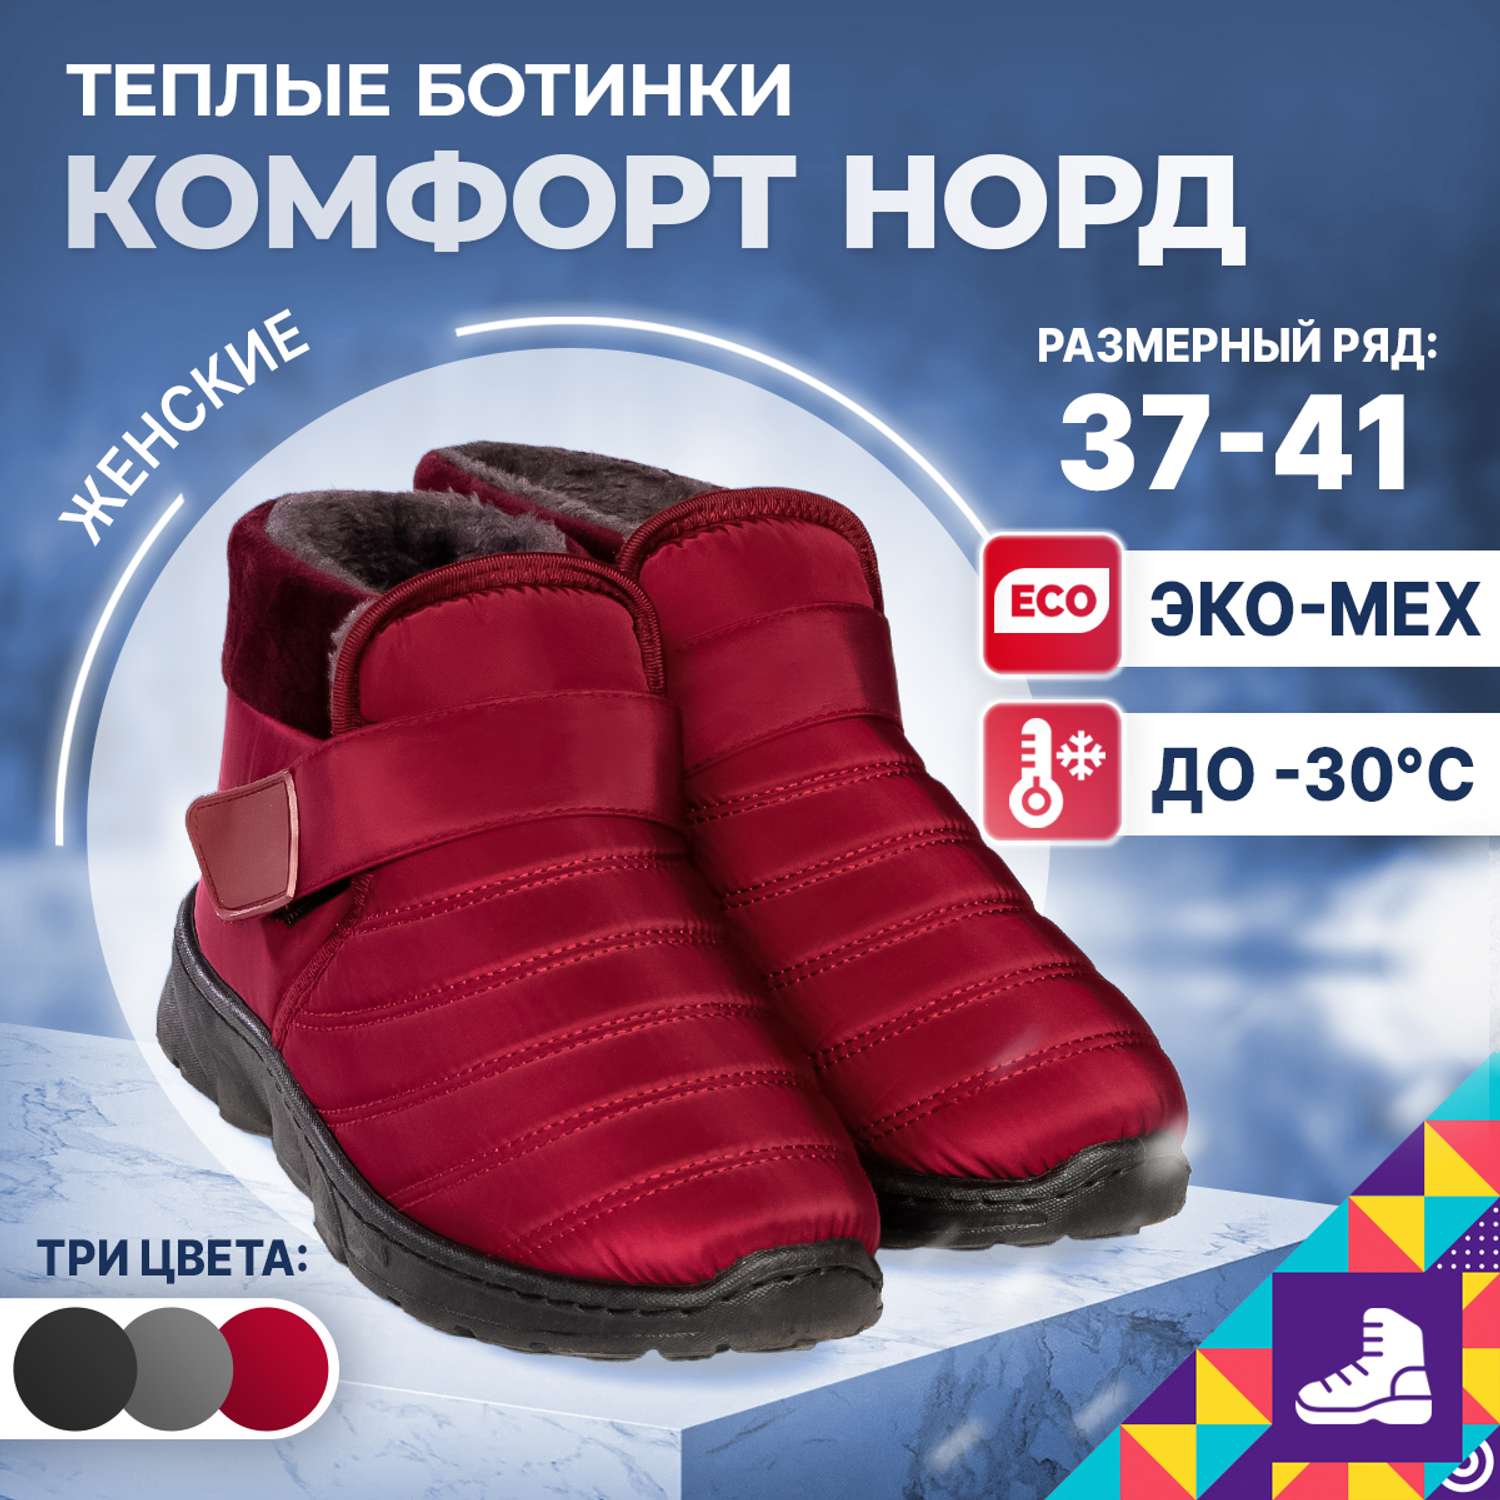 Ботинки Comfort Nord 000150/red - фото 2